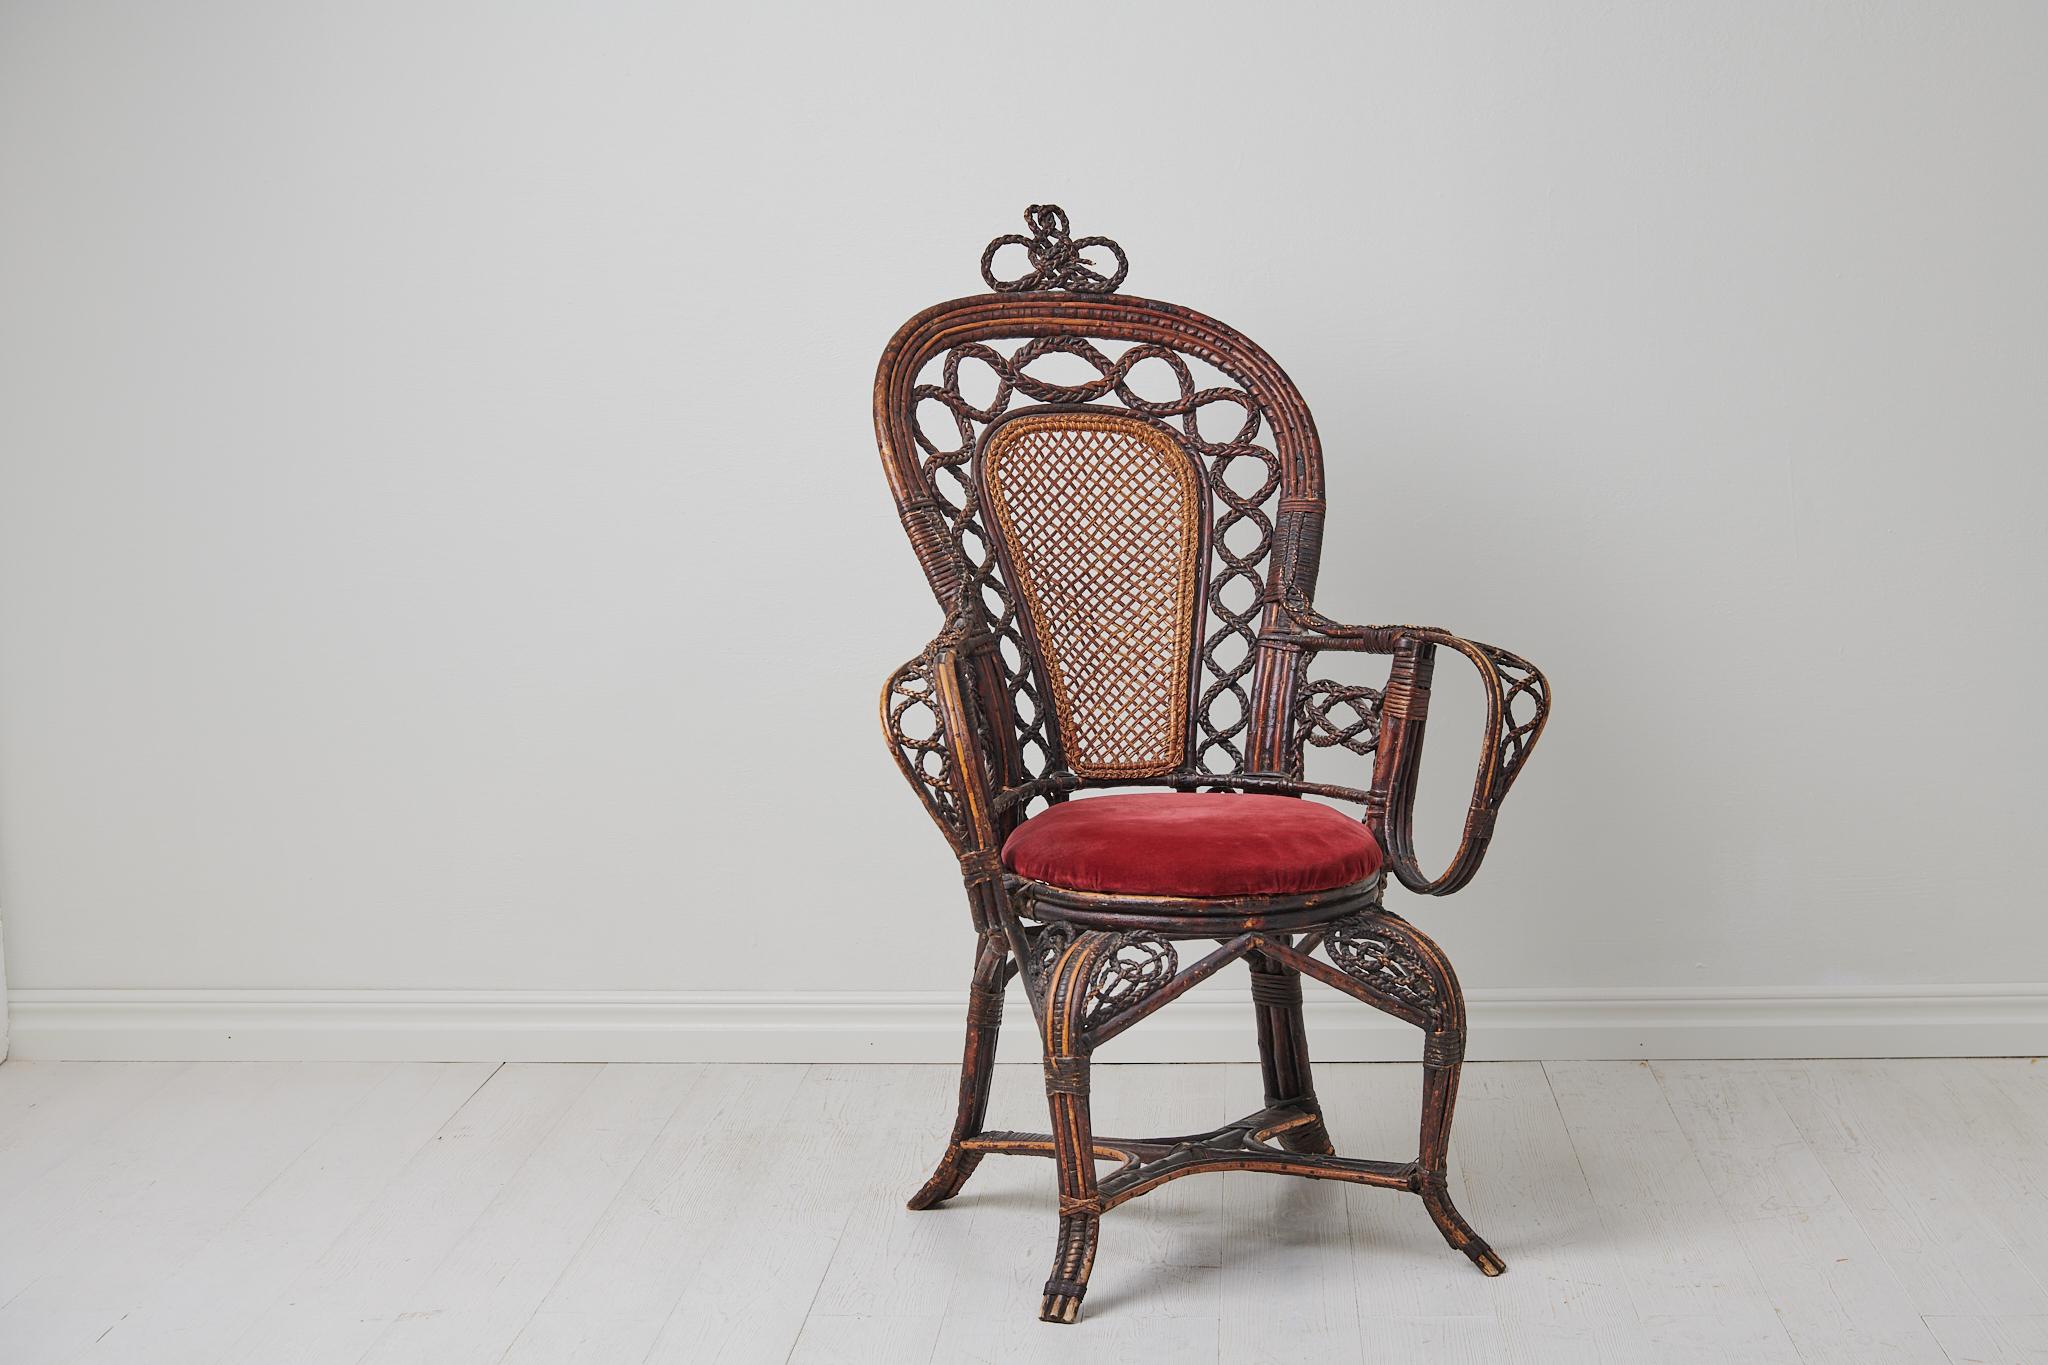 Antiker geflochtener Korbstuhl aus Schweden, hergestellt um das Ende des 19. Jahrhunderts. Der Stuhl ist ein ungewöhnlicher Fund mit einer eklektischen Sammlung verschiedener Webstile und -techniken. Das Aussehen des Stuhls ist unverkennbar antik